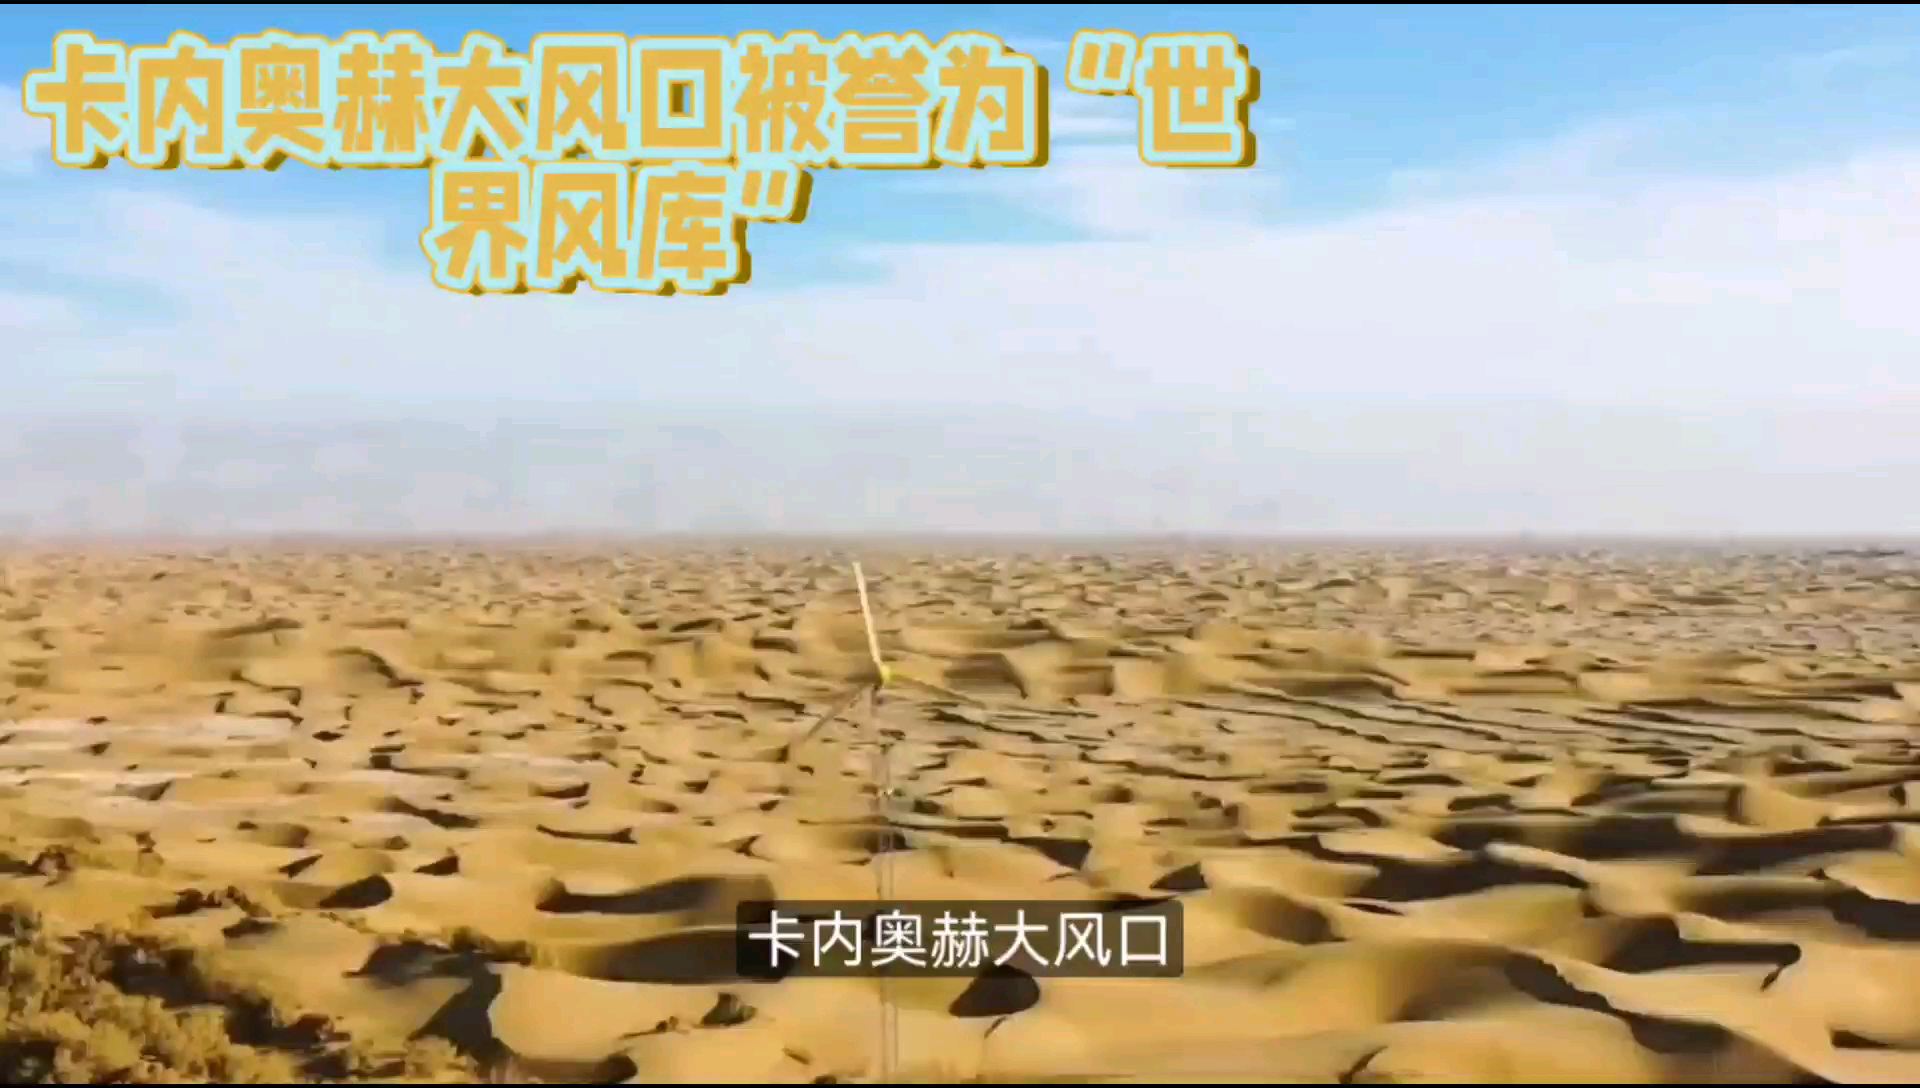 卡内奥赫大风口，位于中国新疆维吾尔自治区的塔克拉玛干沙漠中，是世界上最大的流动沙漠风区。这个地区因其